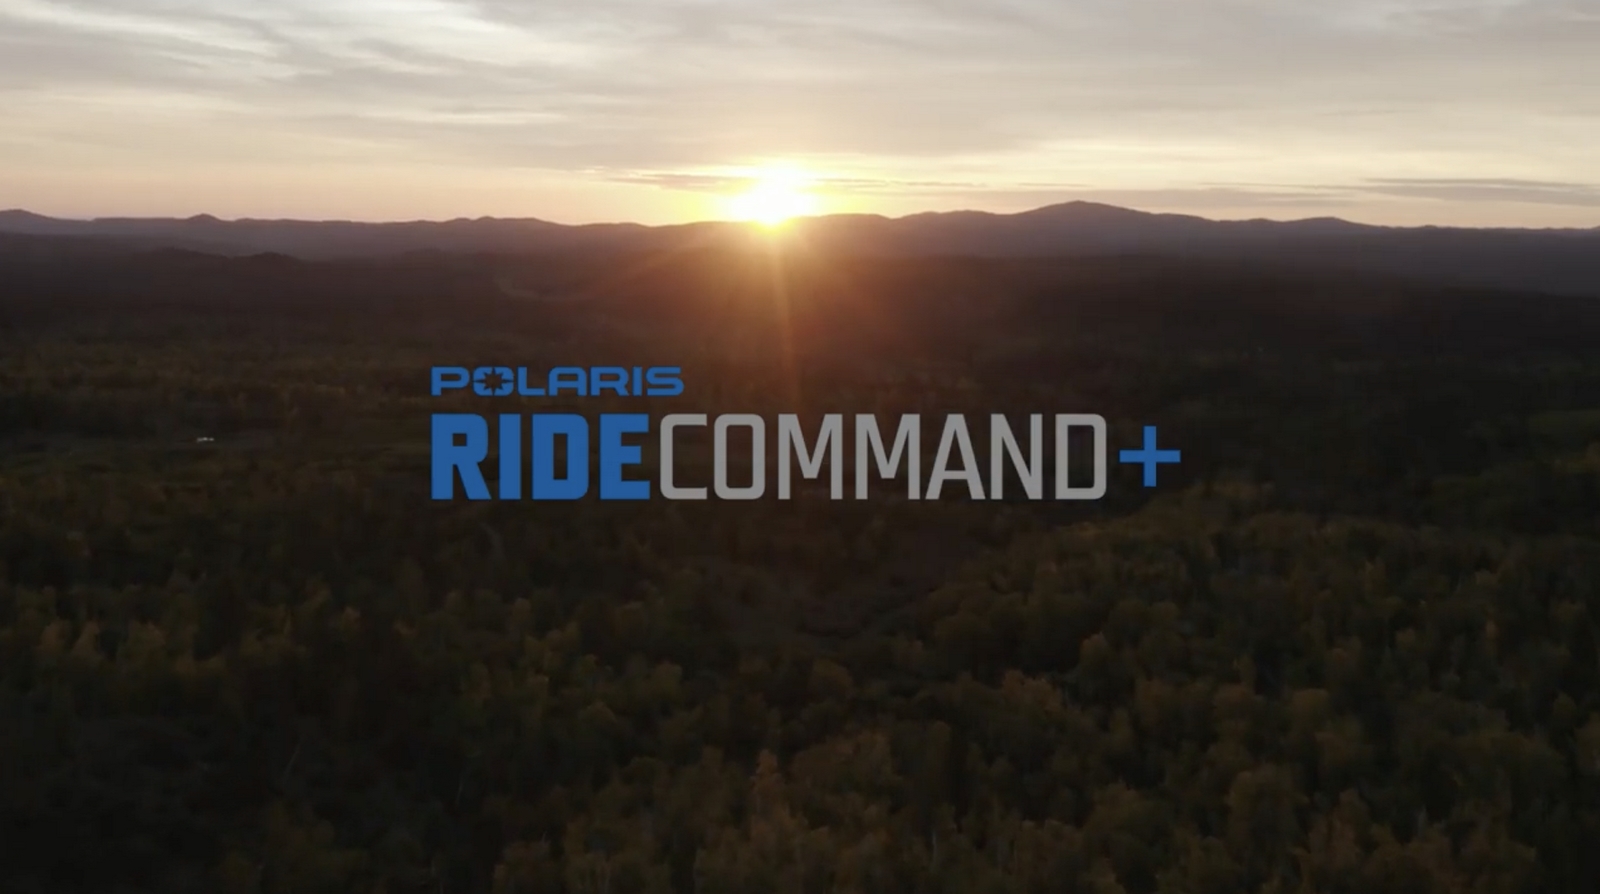 Ride Command+